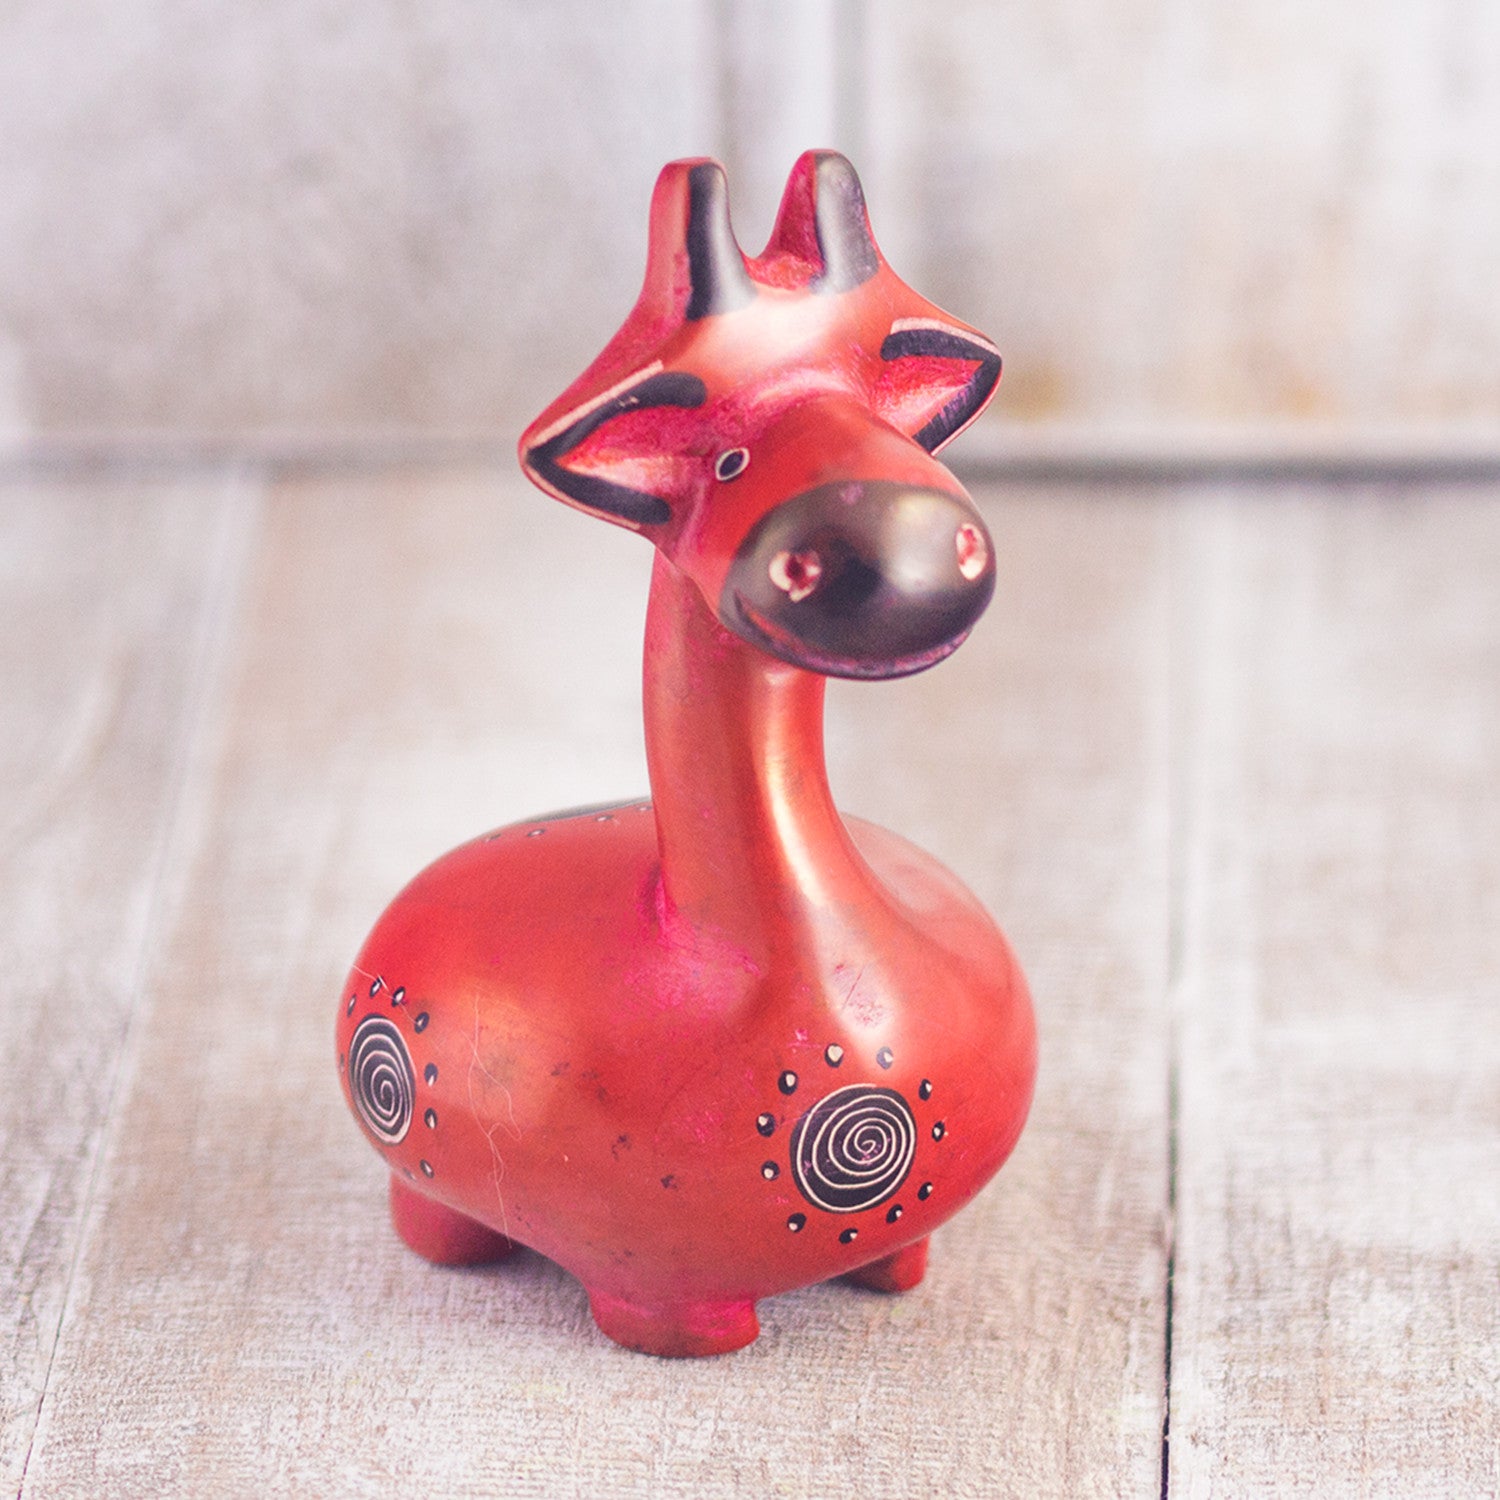 elite faglært Modtagelig for Mr. Ellie Pooh • Handmade Fair Trade Gifts • Soapstone Giraffe Red